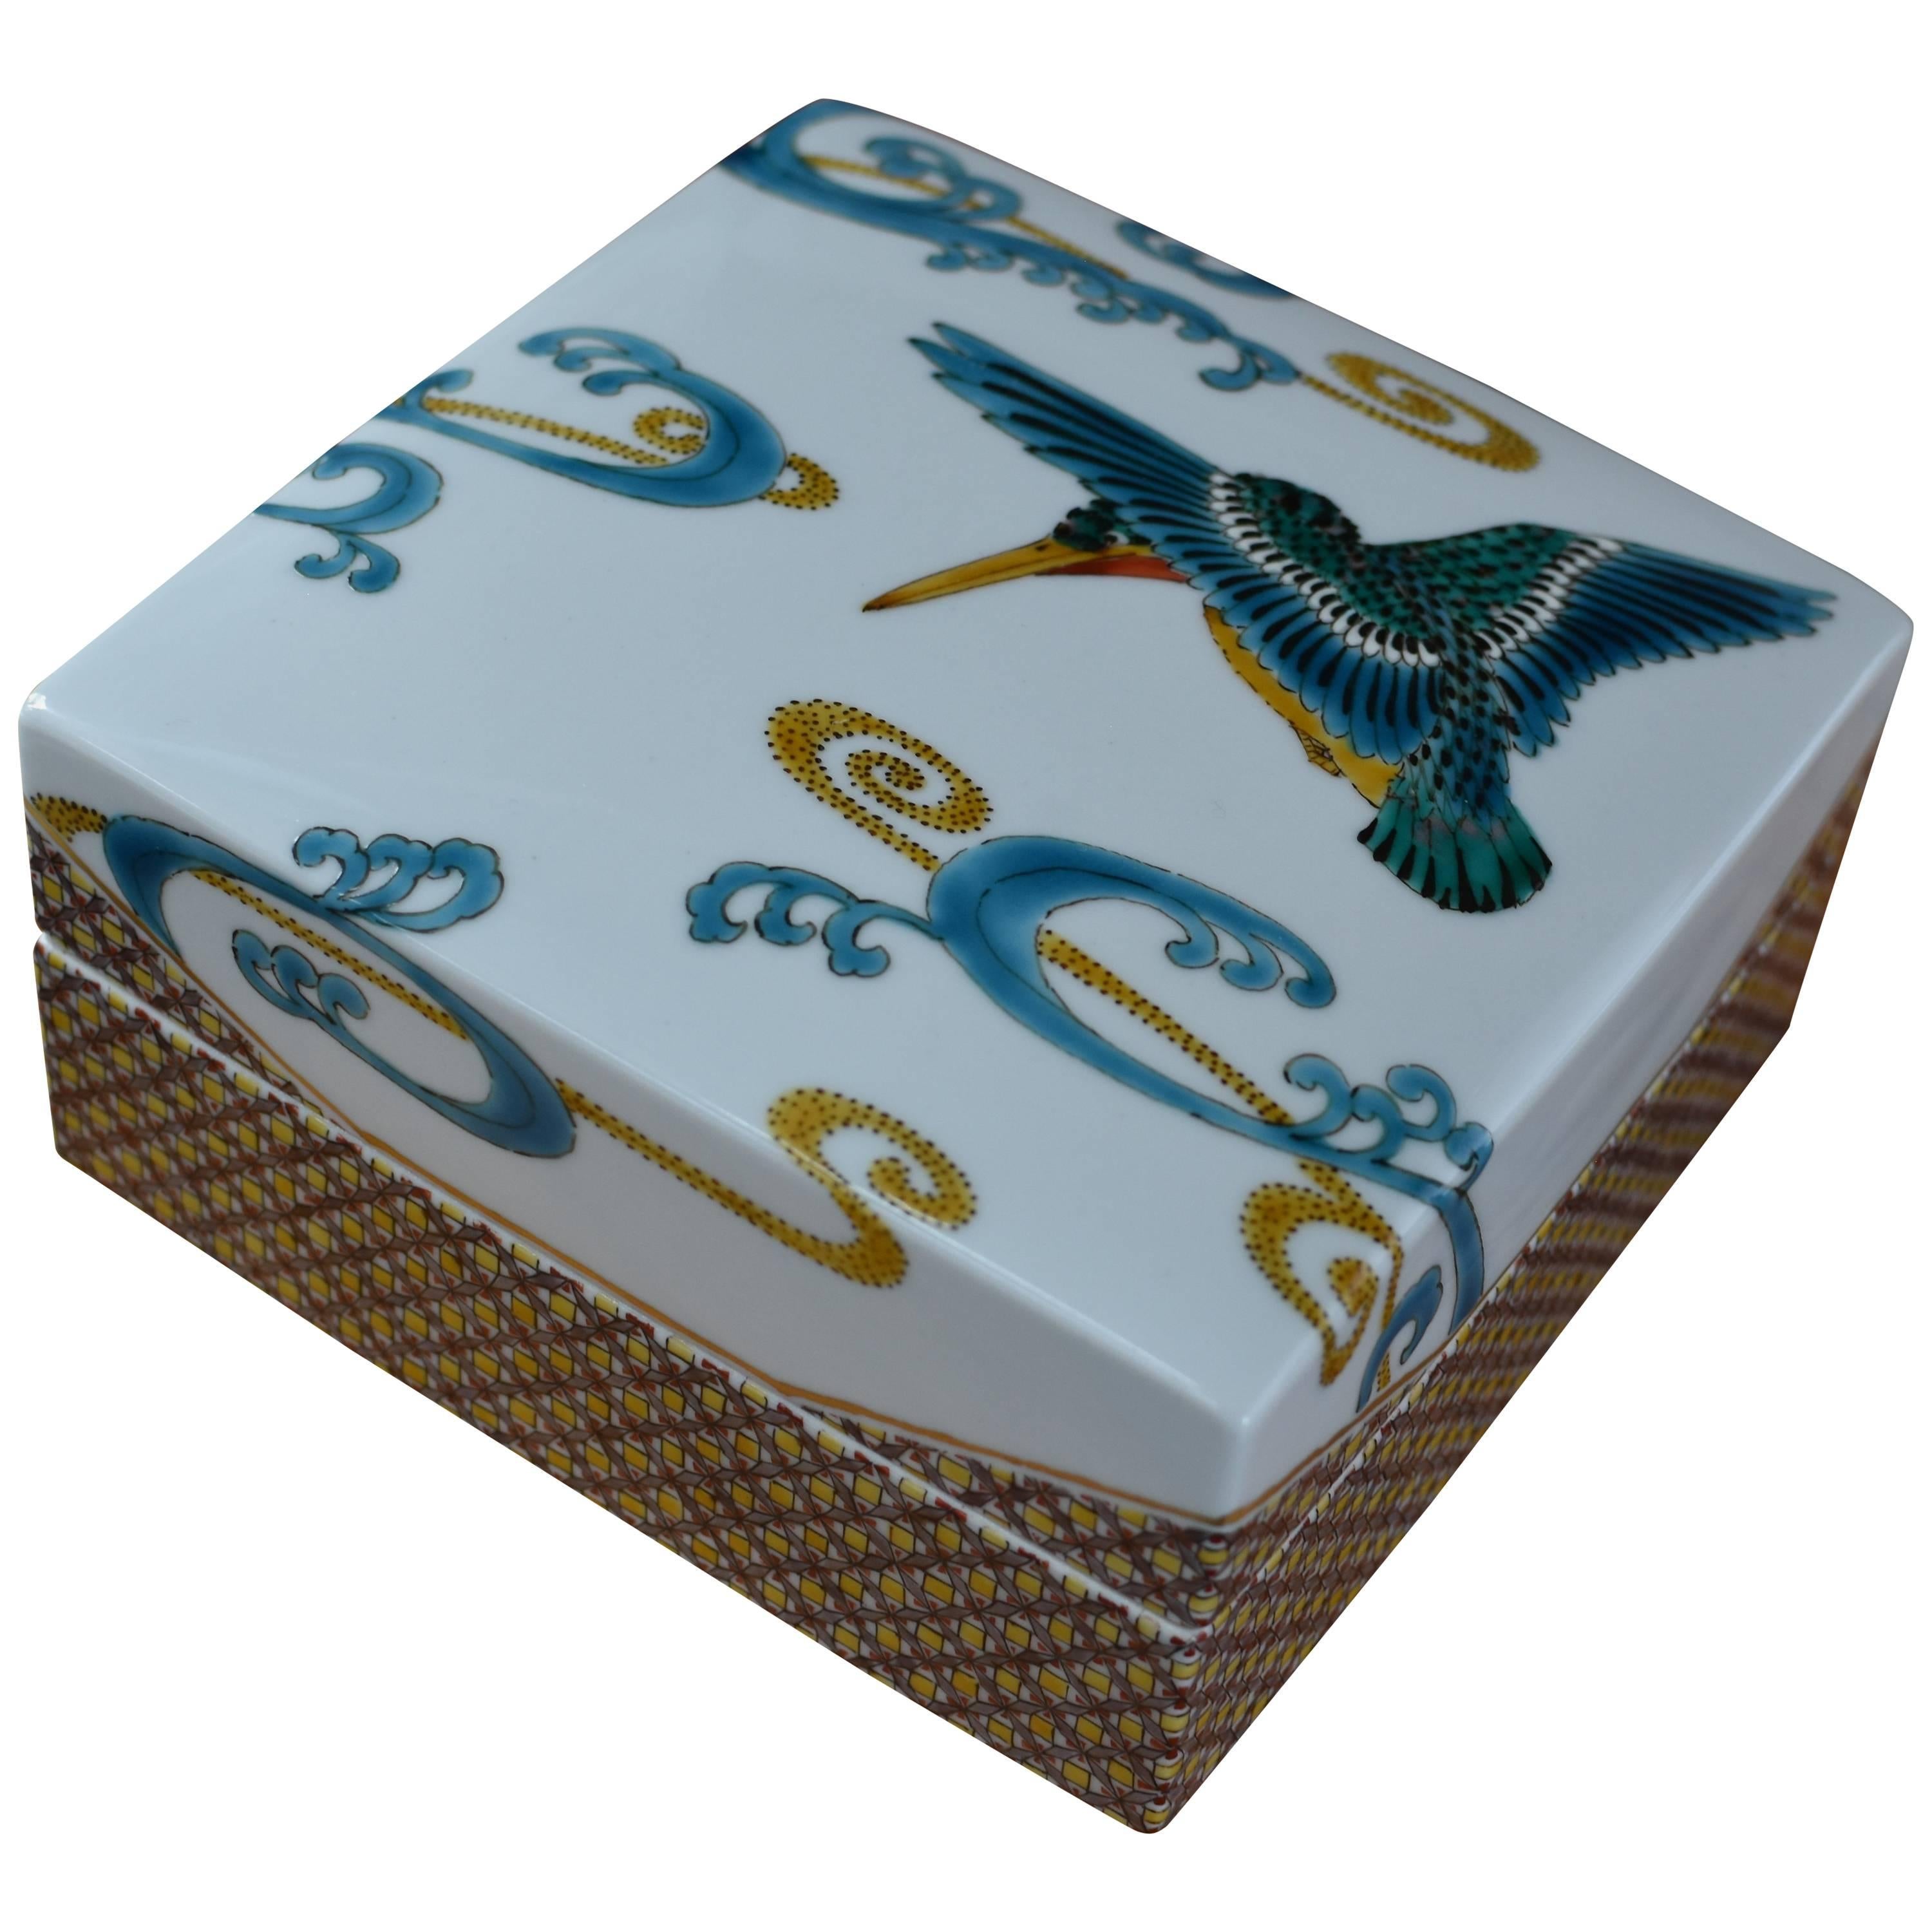 Blue White Porcelain Box by Japanese Master Artist